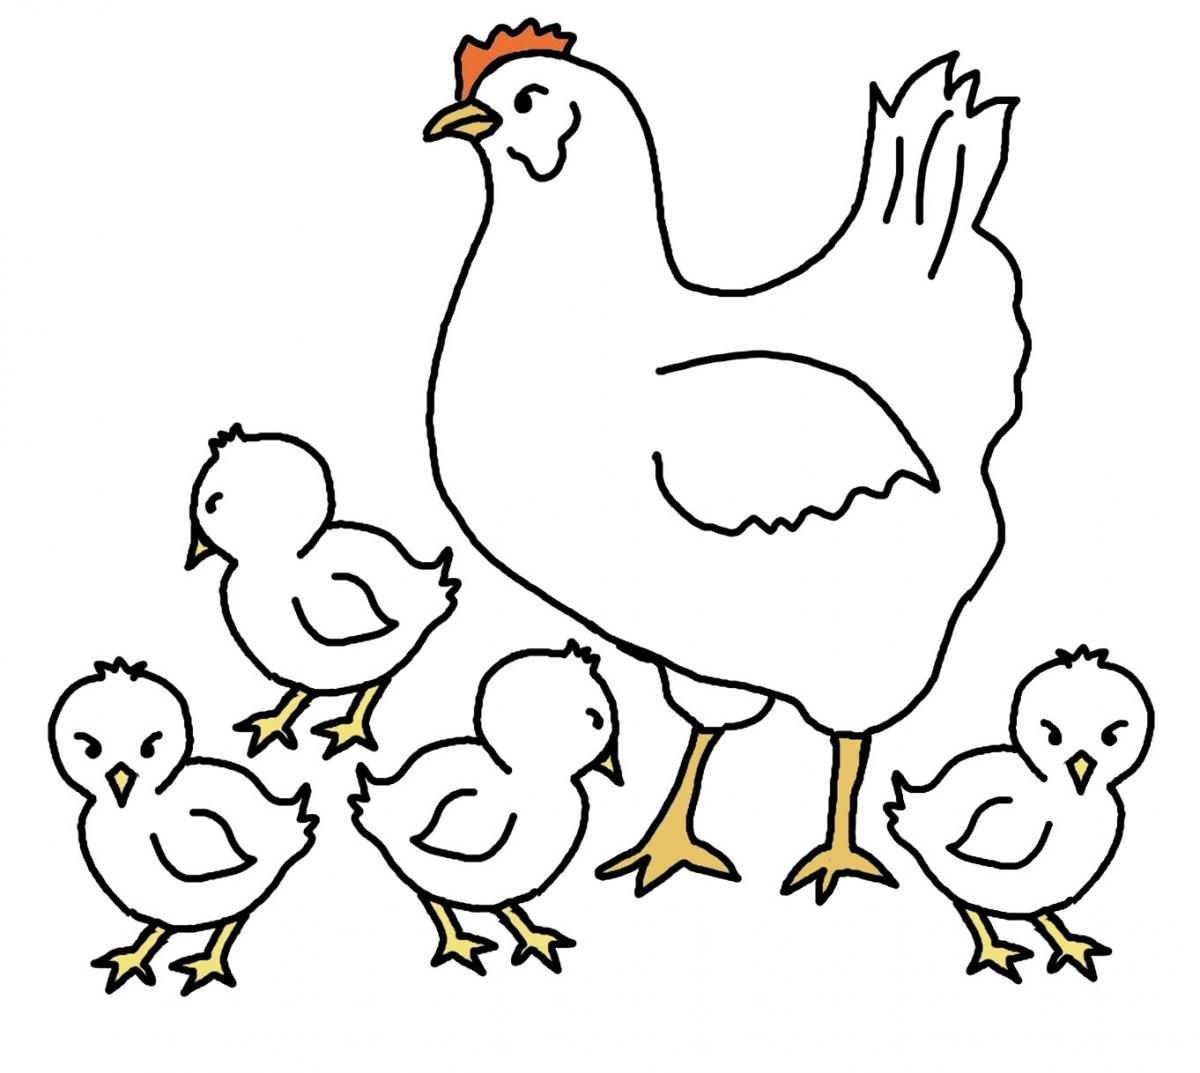 Курица с цыплятами картинки для детей